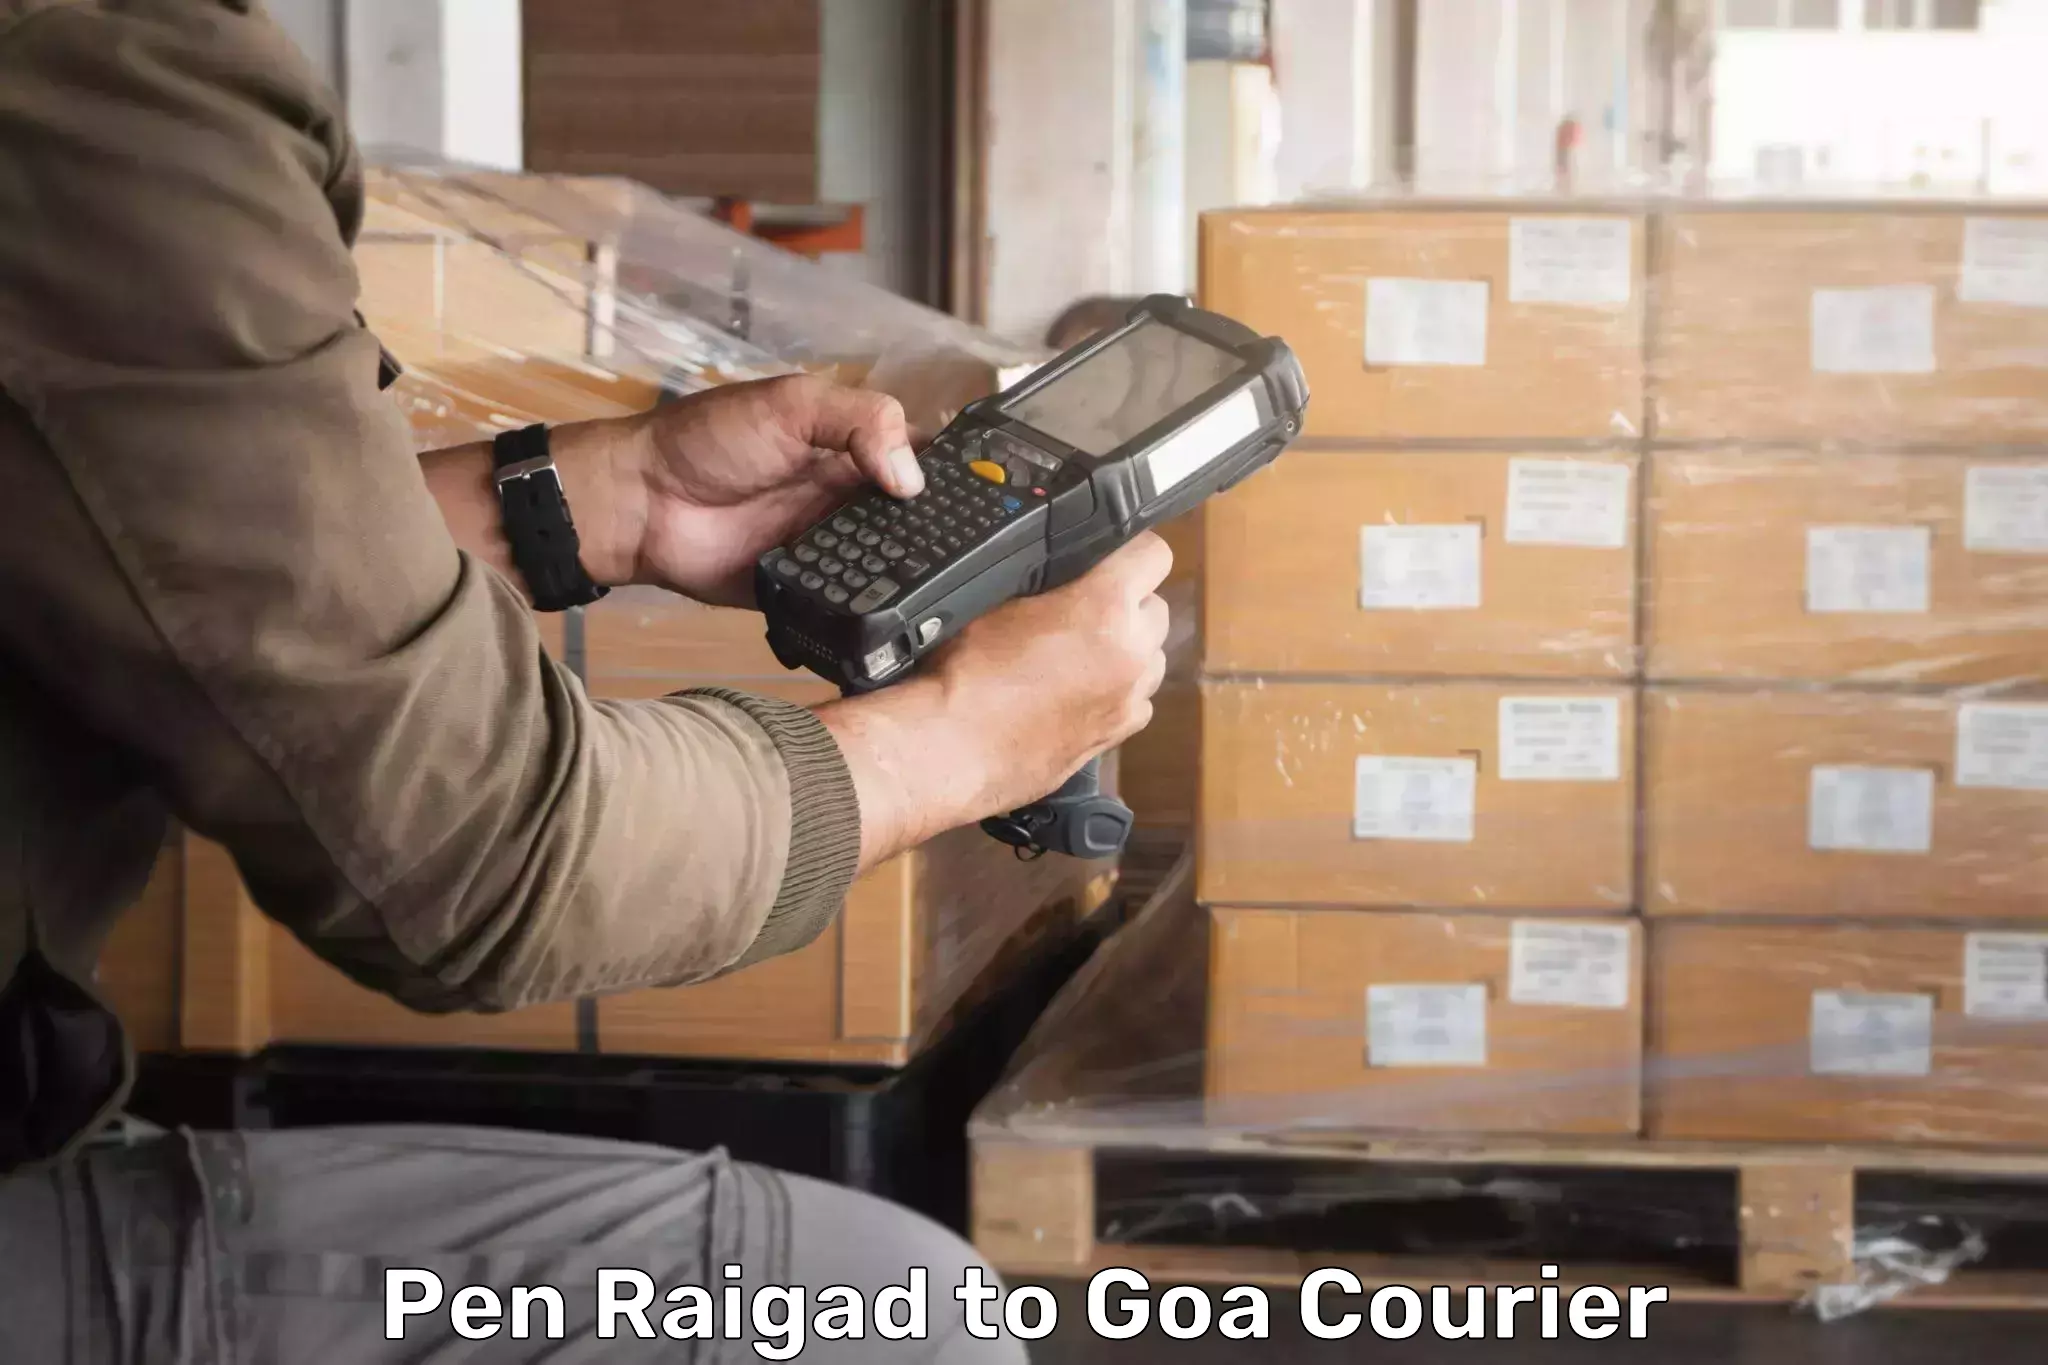 Nationwide parcel services Pen Raigad to Ponda